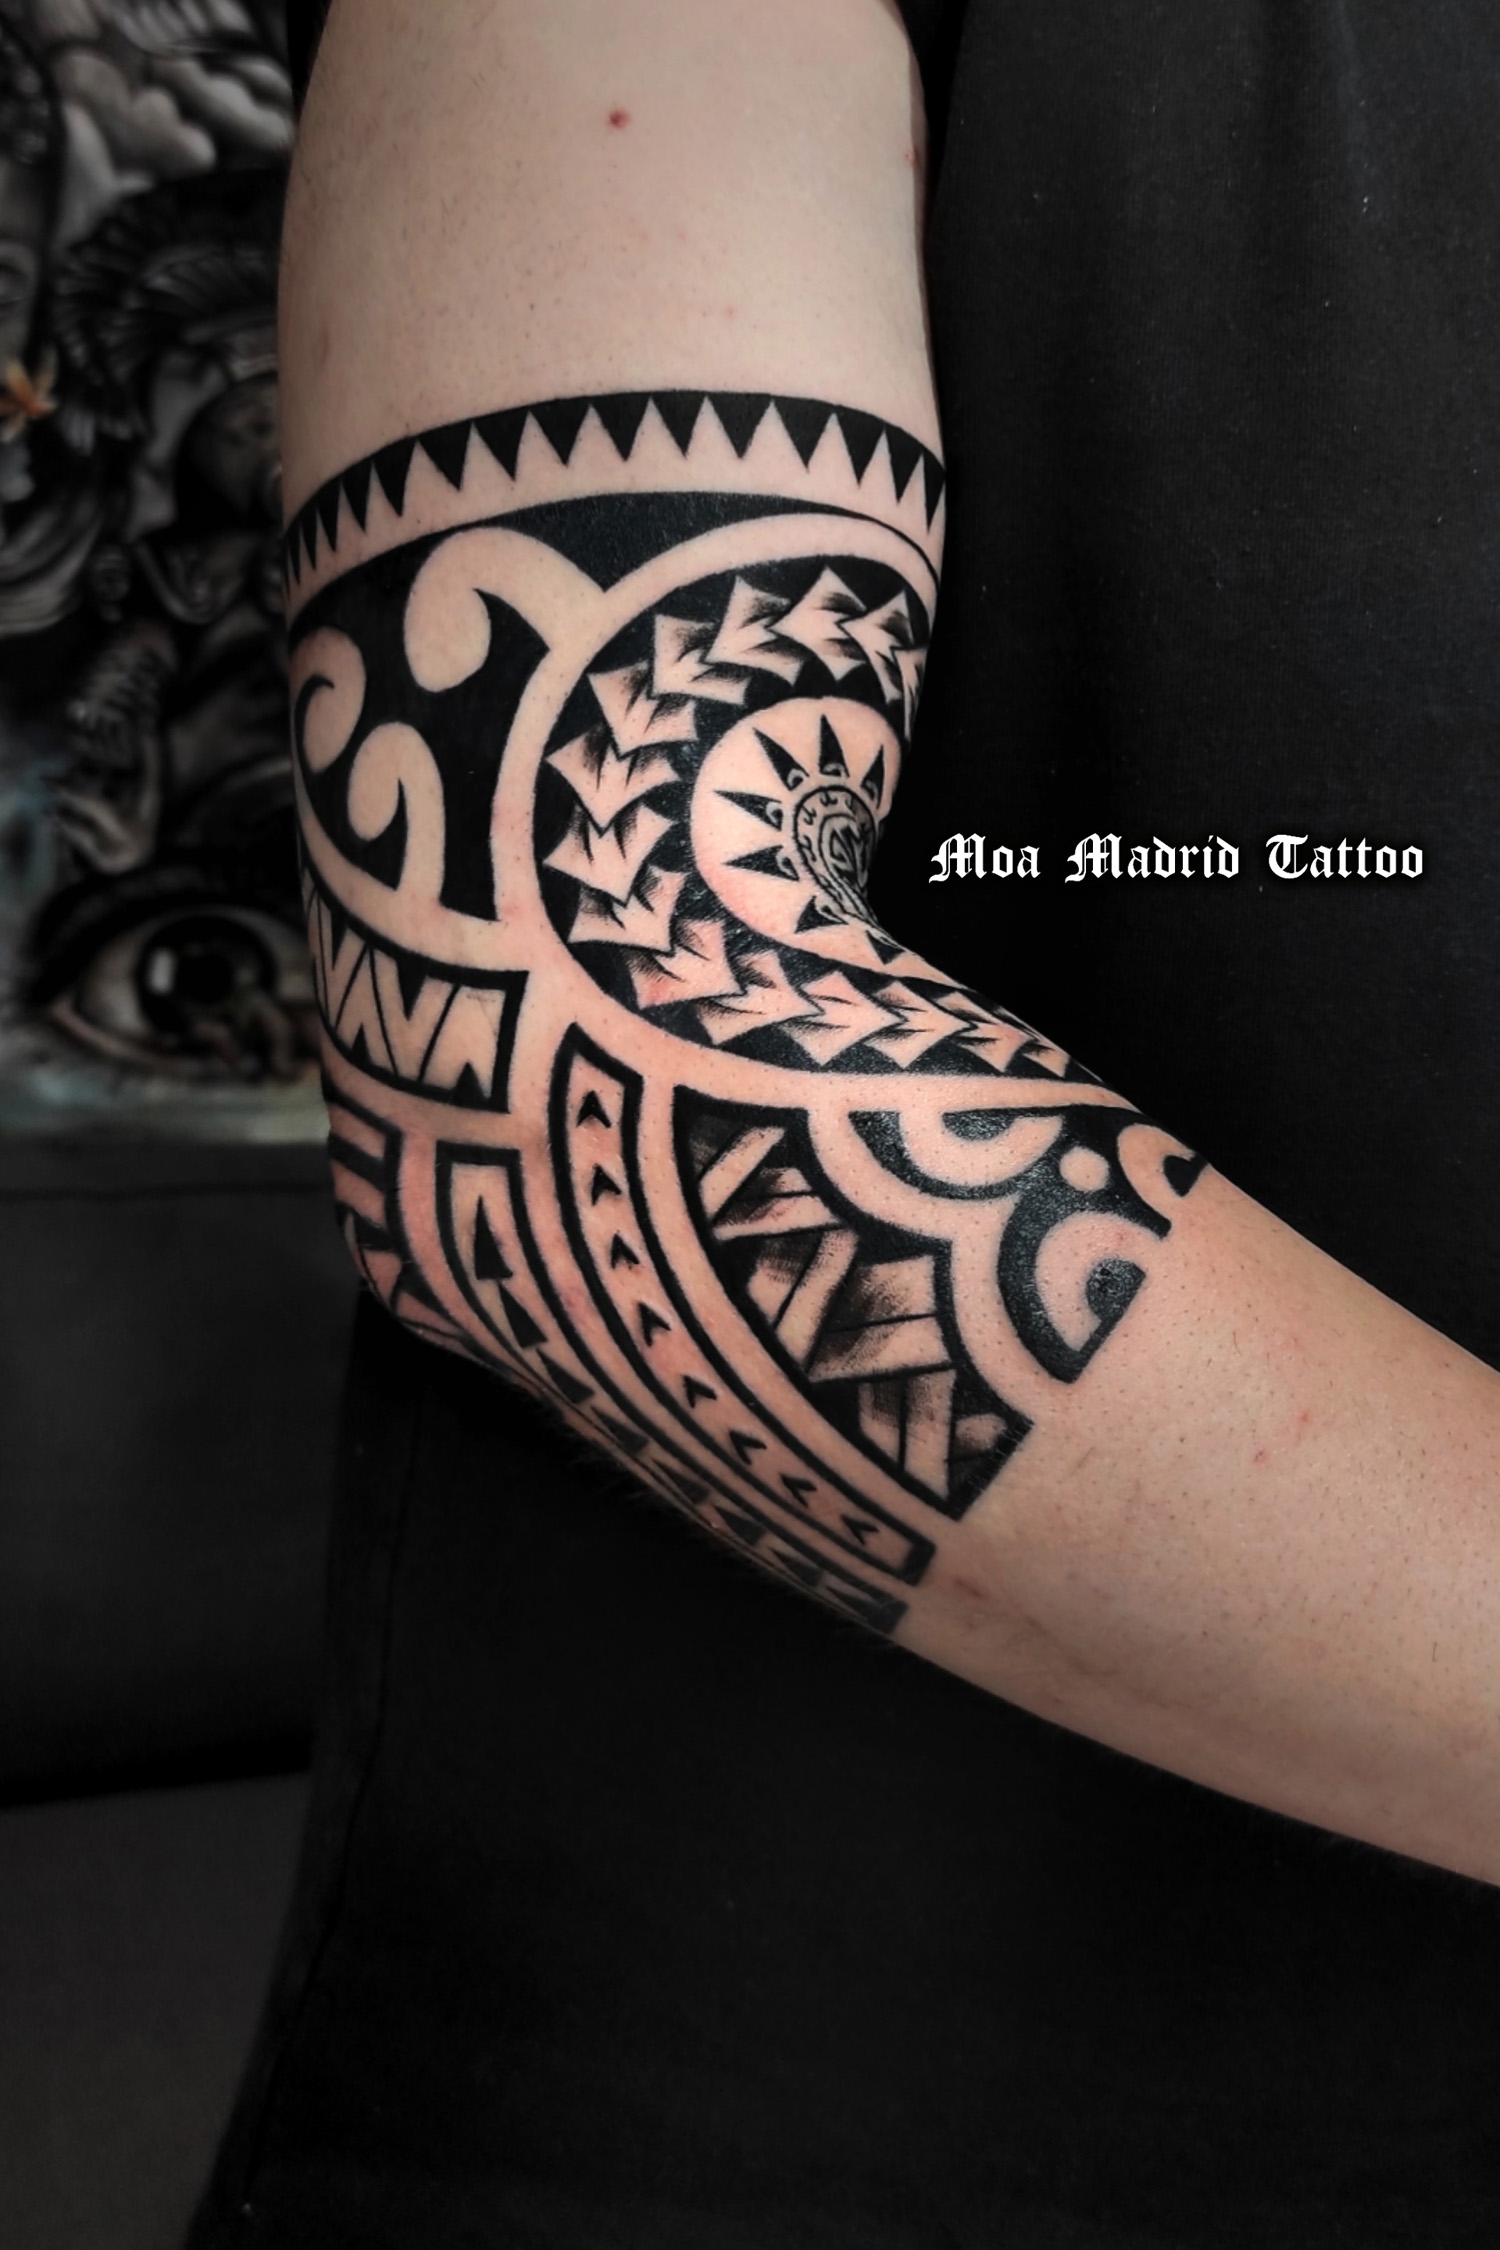 Exclusivo diseño de tatauej maorí en el codo